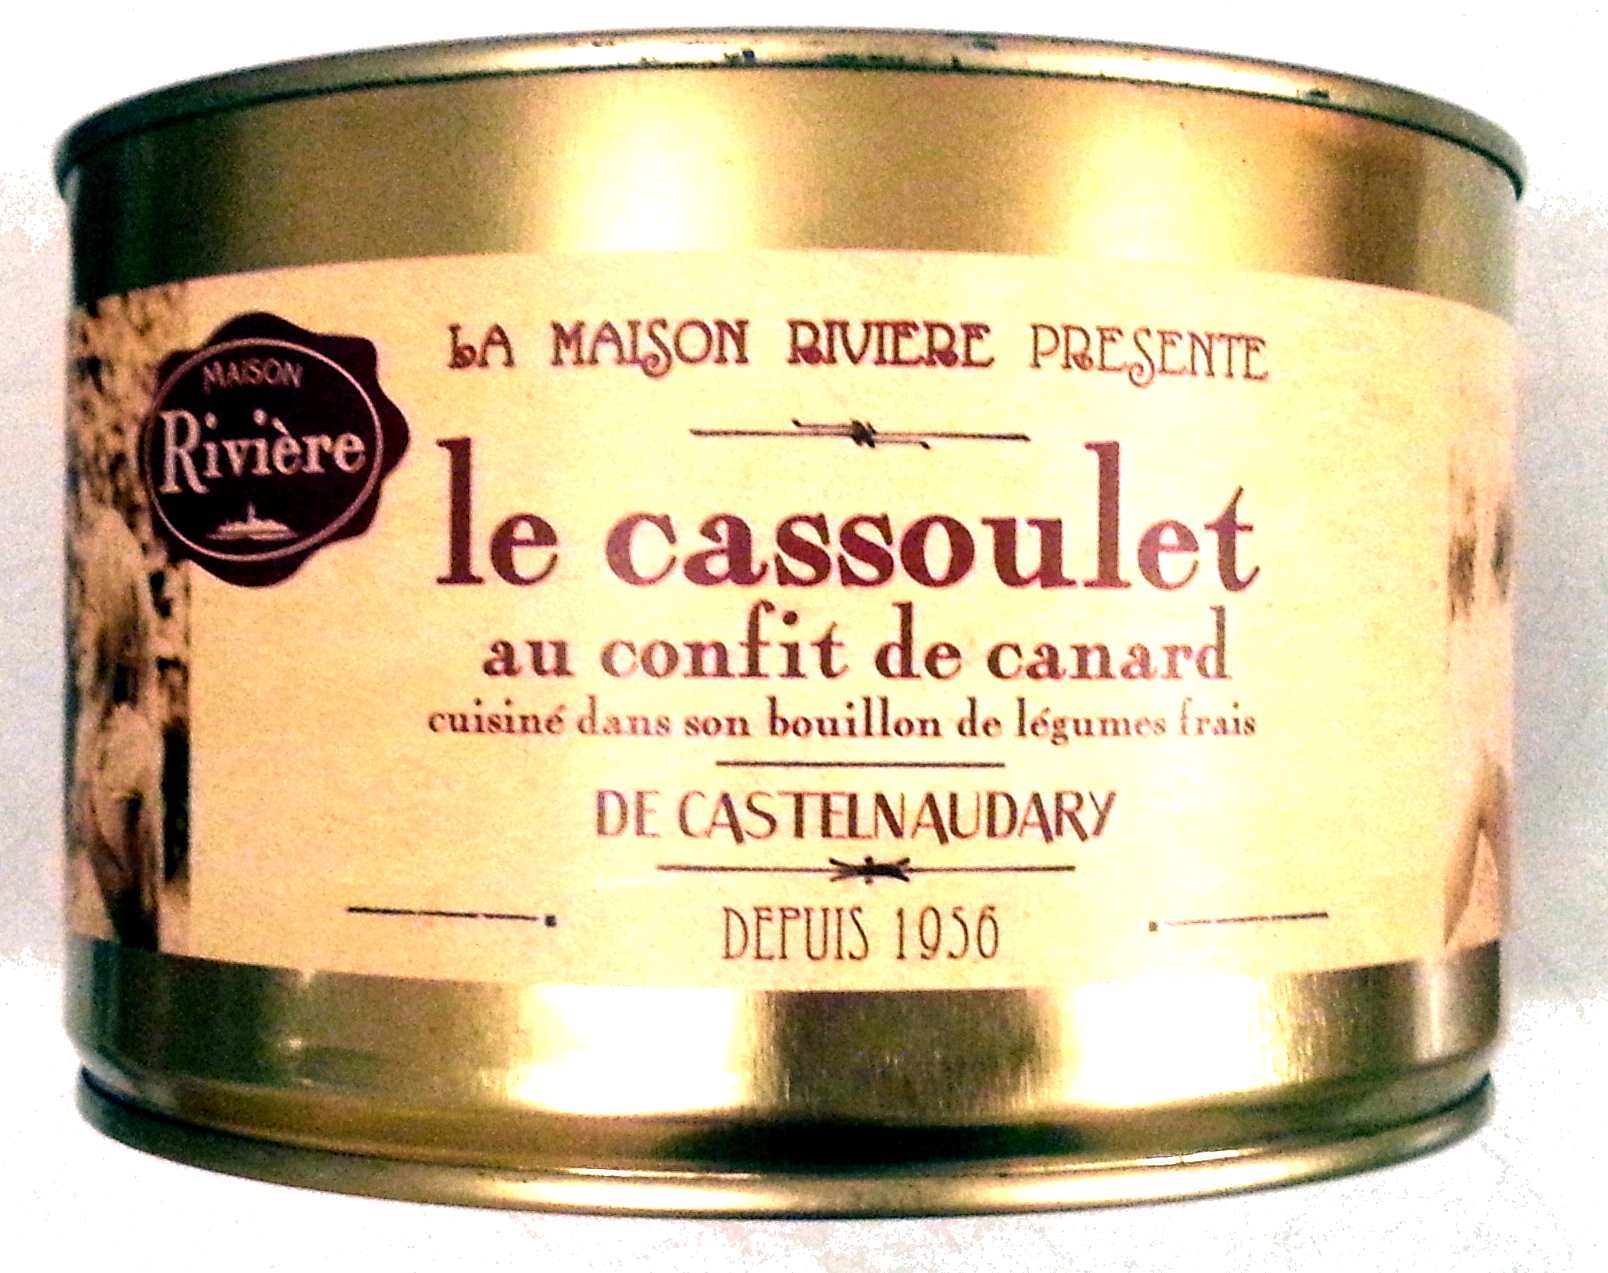 Le cassoulet au confit de canard de Castelnaudary cuisiné dans son bouillon de légumes frais, boîte 2/1 - Product - fr